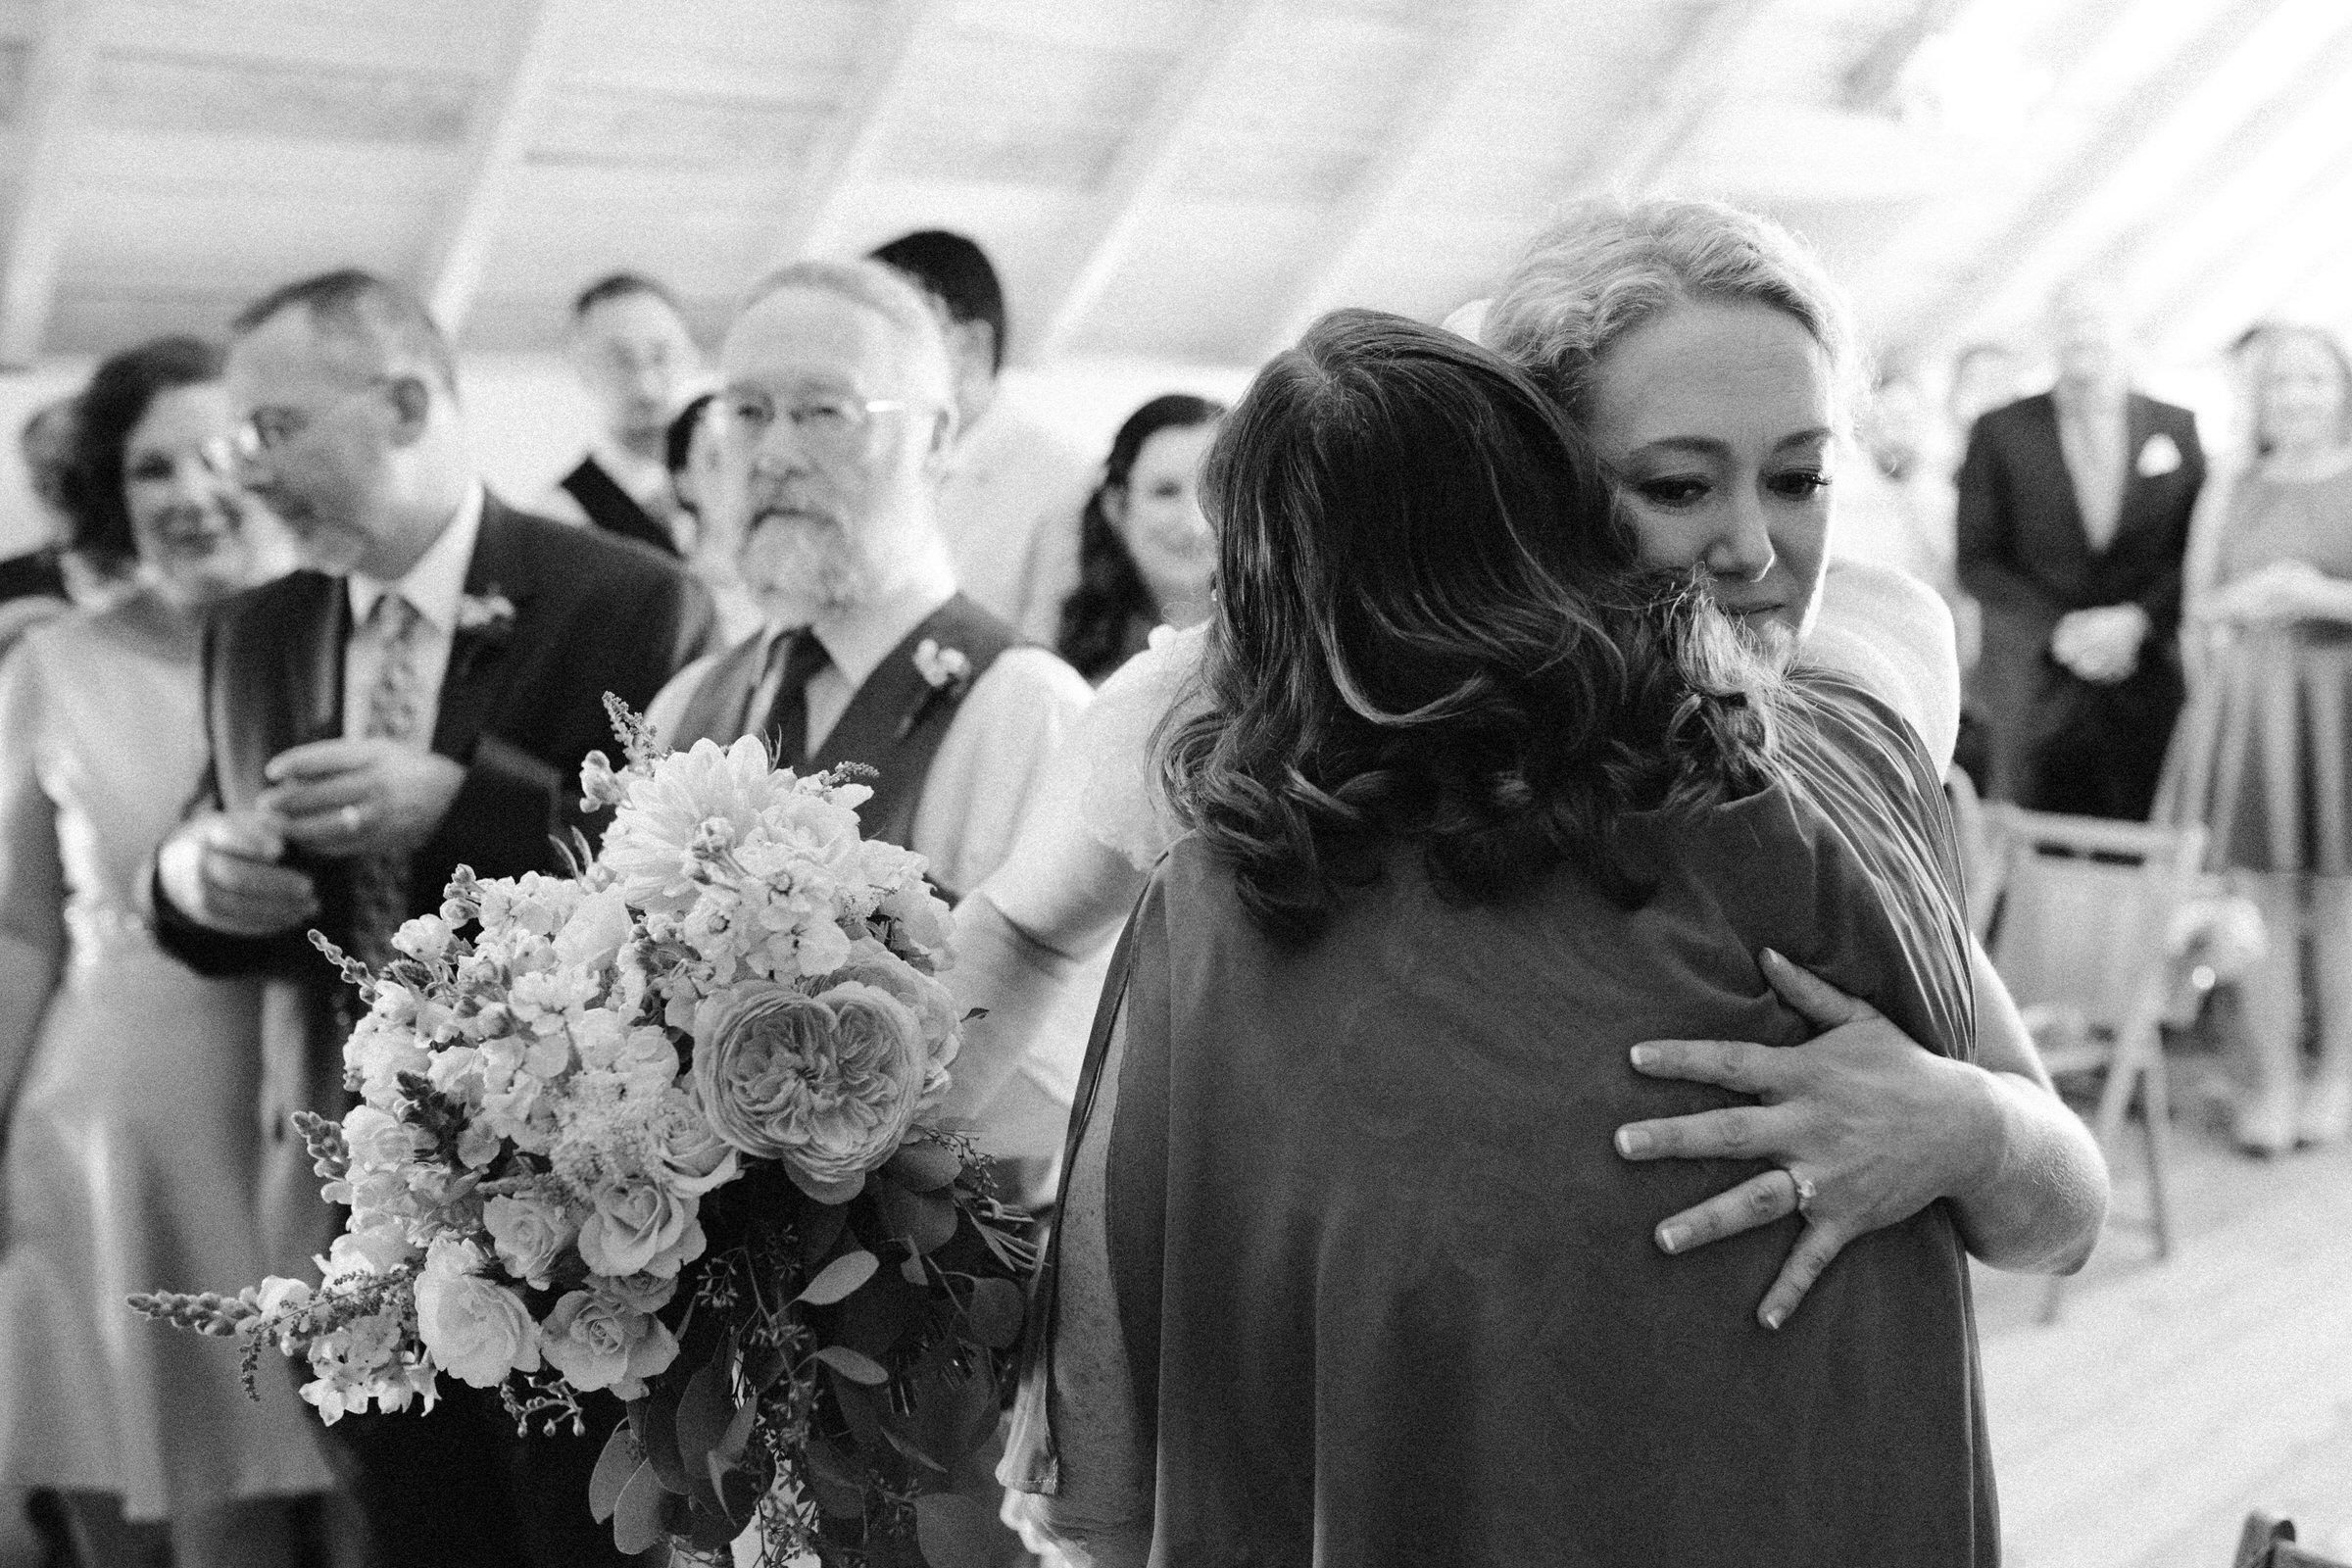 Wayfarer Whidbey Island Wedding: Sara gives her mom a hug